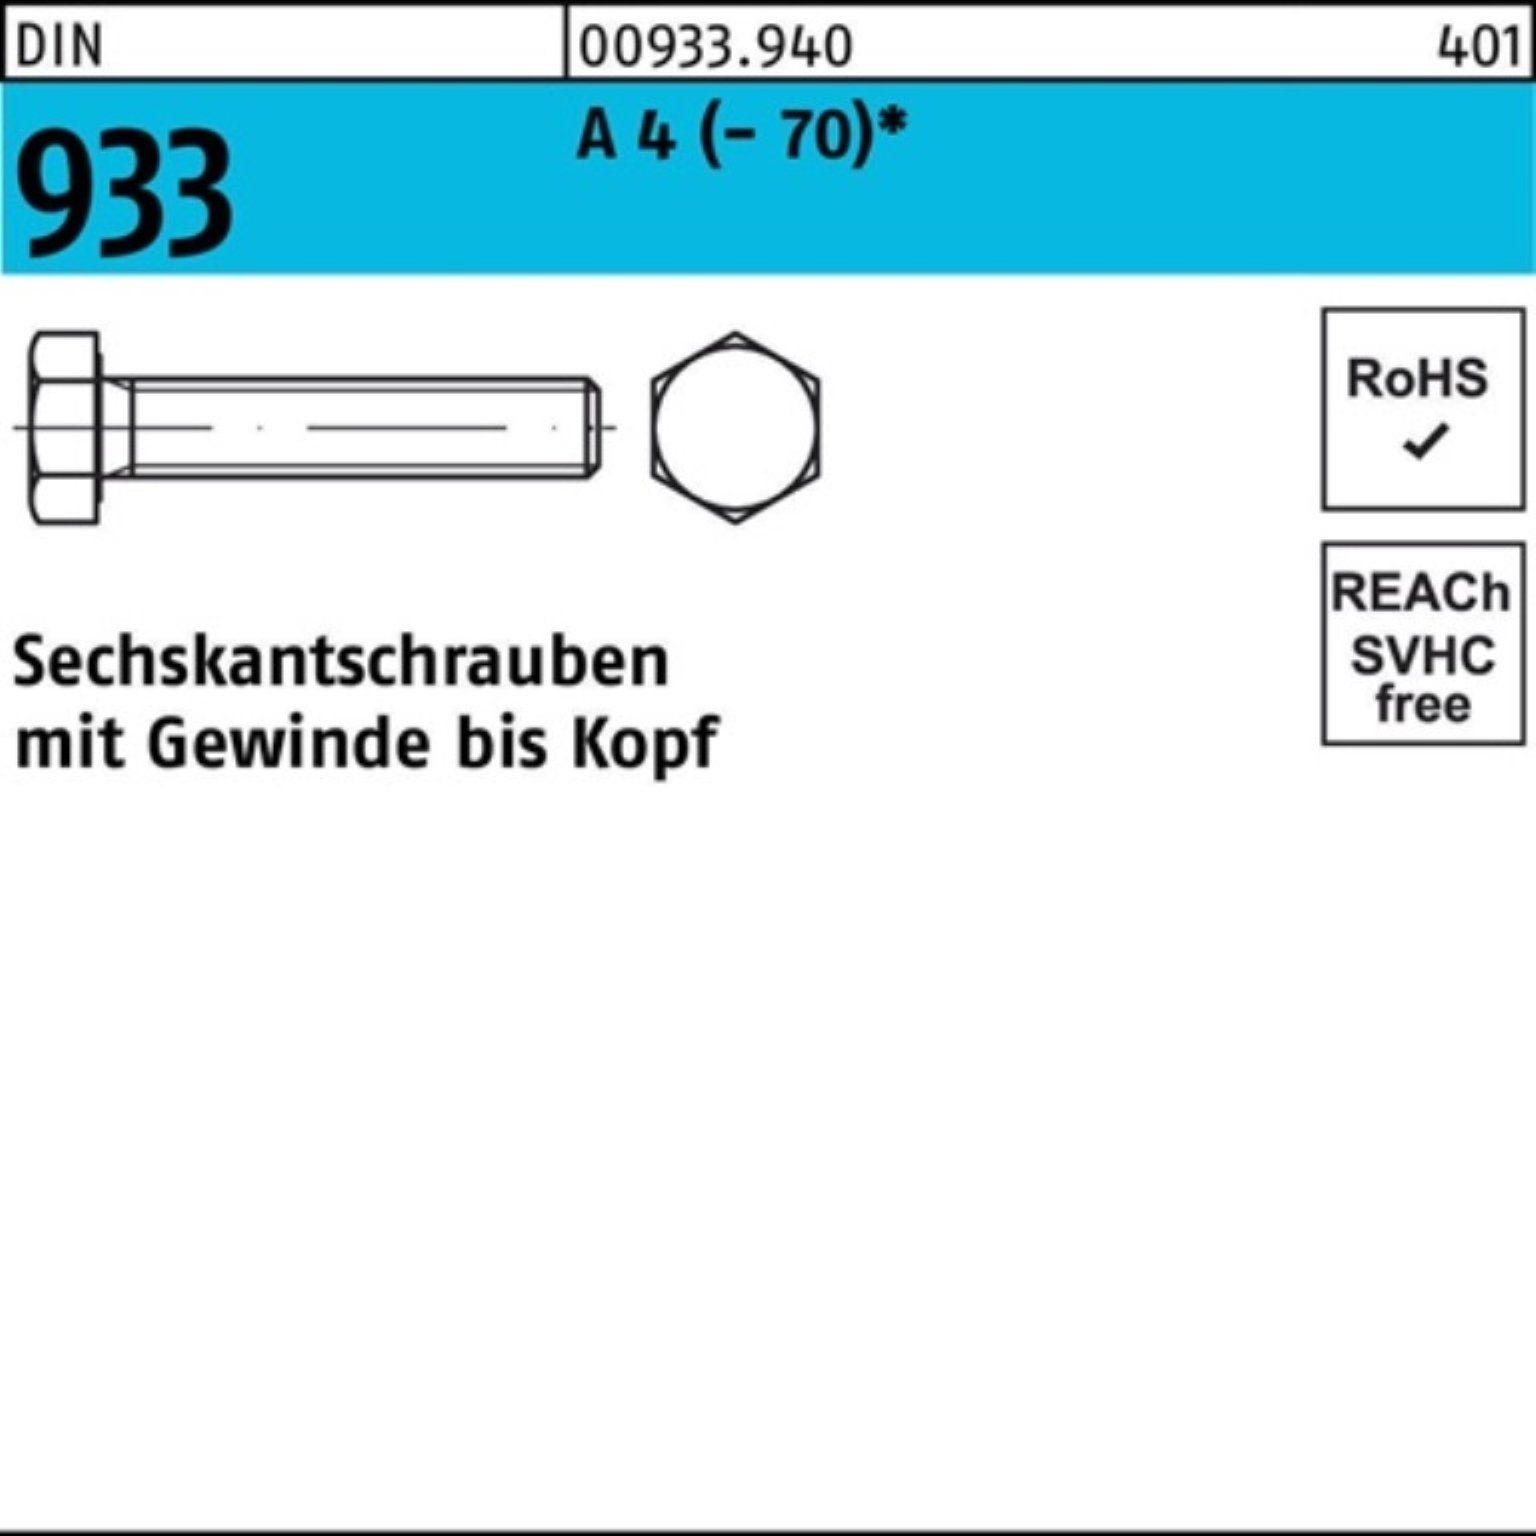 Reyher Sechskantschraube 200er Pack Sechskantschraube DIN 933 VG M8x 10 A 4 (70) 200 Stück D